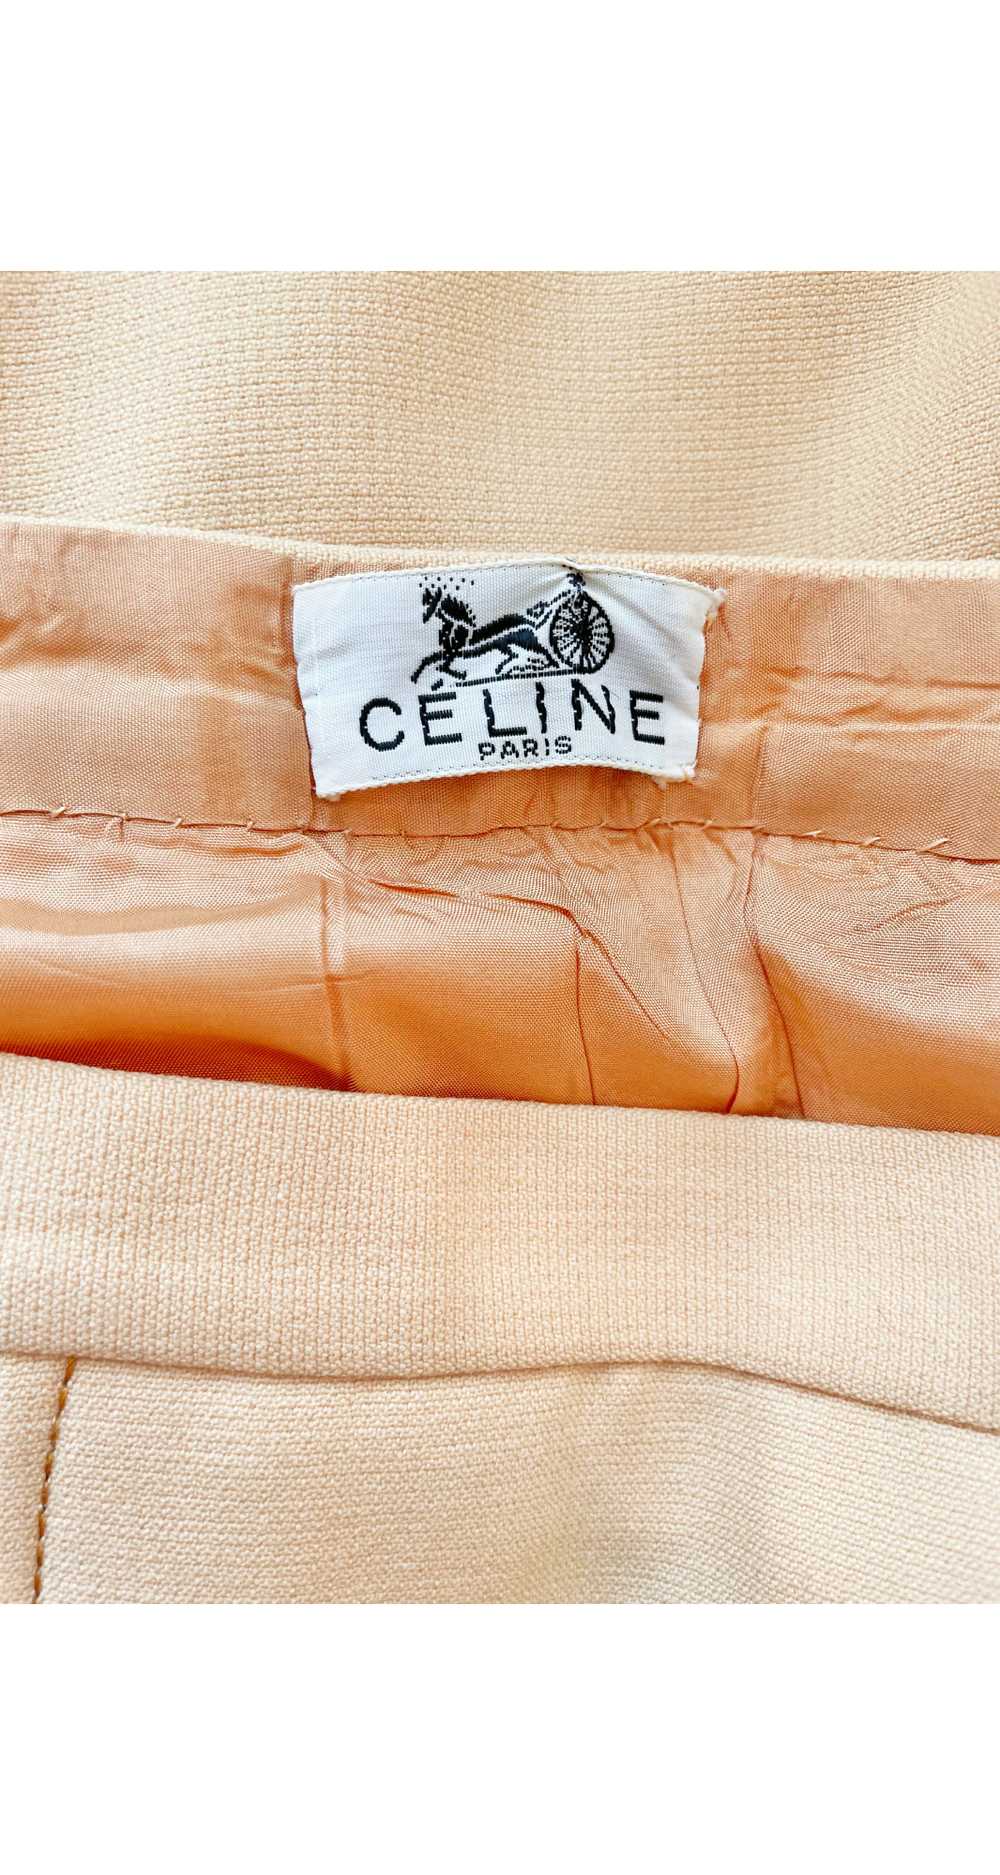 Céline 1970s Tan Wool Box Pleated Knee-Length Ski… - image 6